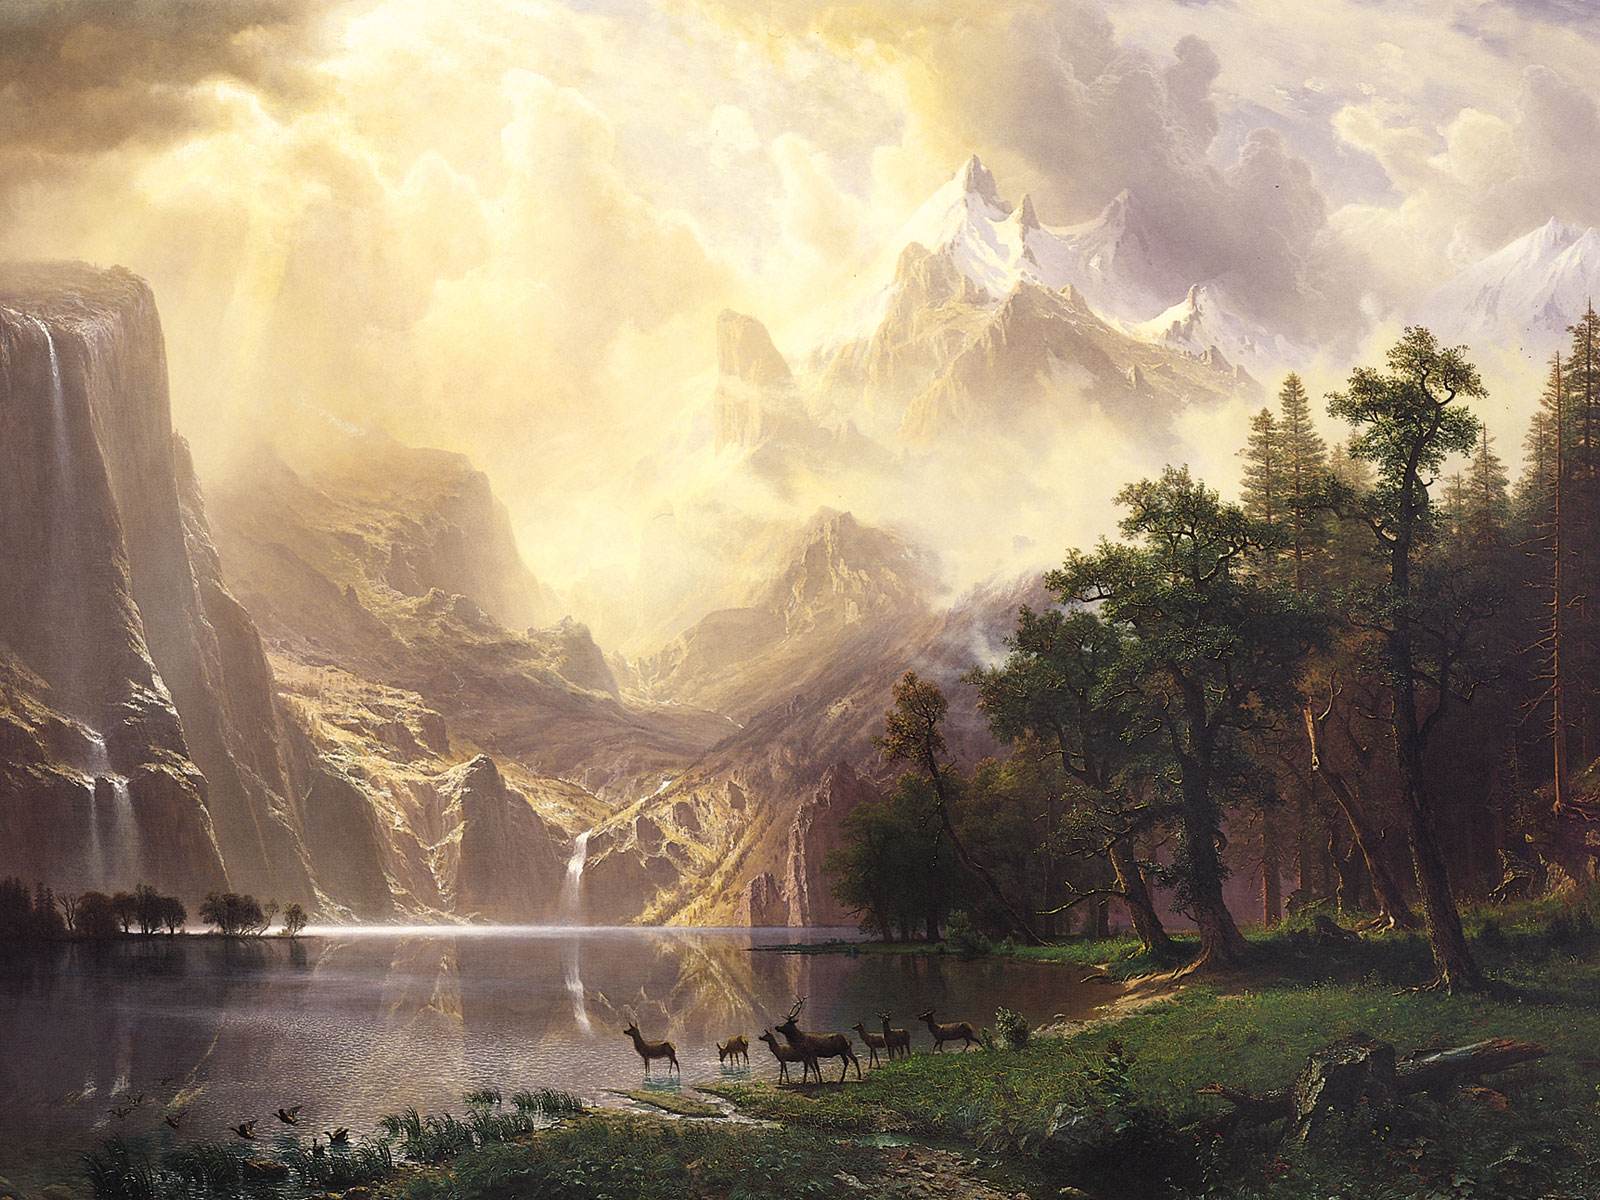 Albert Bierstadt Among The Sierra Nevada Mountains , HD Wallpaper & Backgrounds